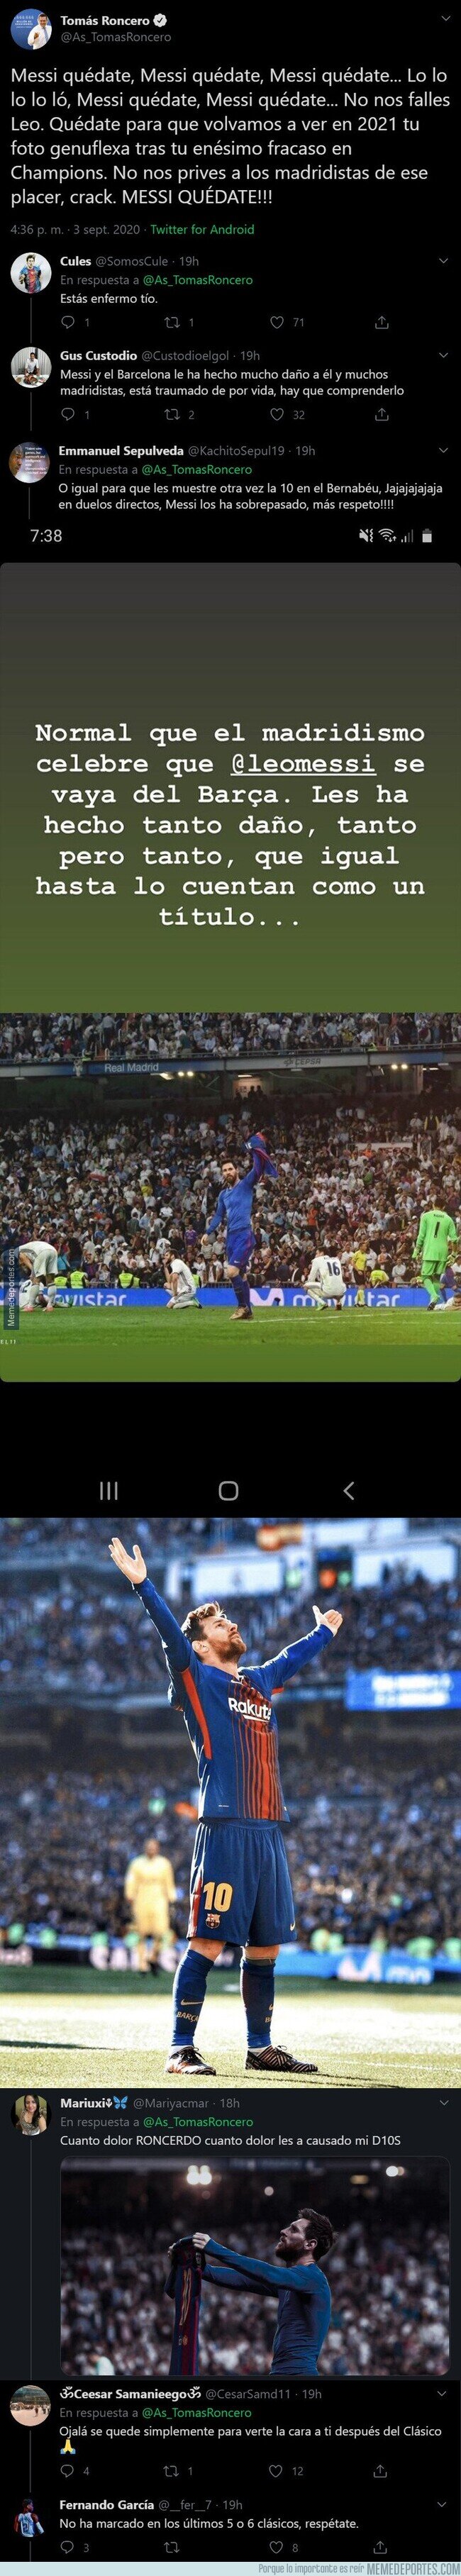 1114916 - Tomás Roncero la lía pardísima con este tuit contra Messi y los culés no tardan en responder